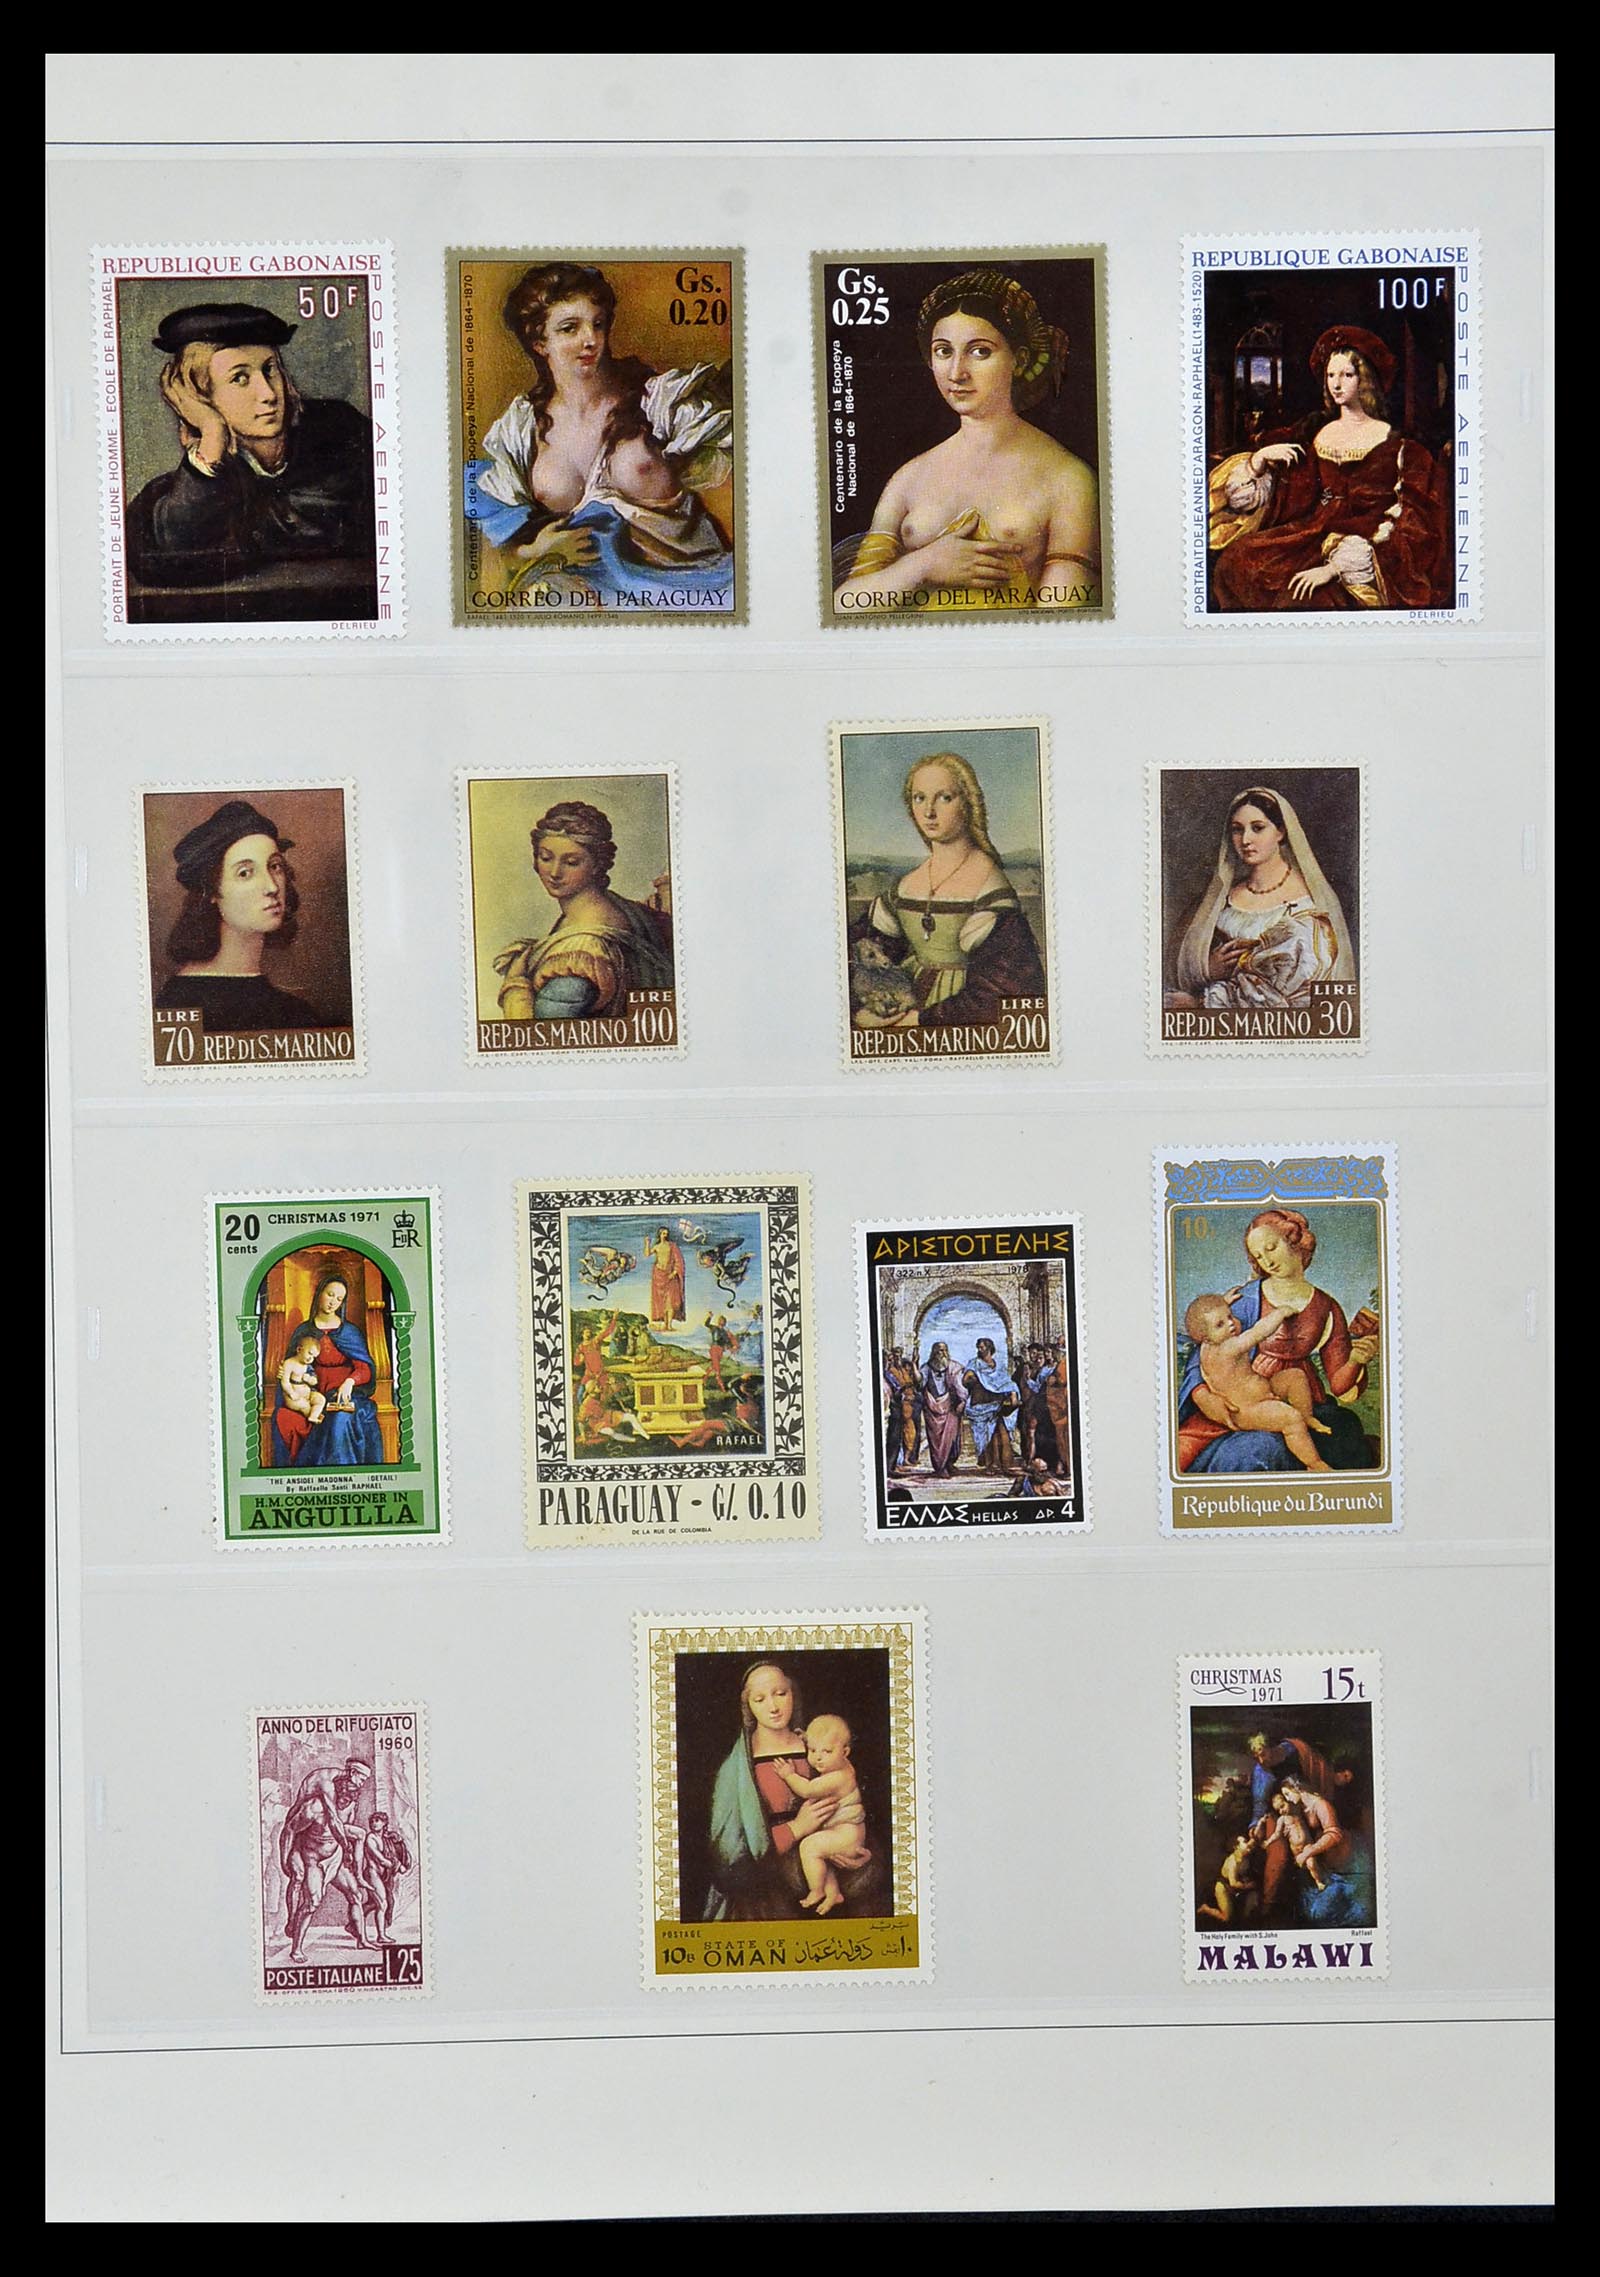 34946 061 - Stamp Collection 34946 Motief Kunst en Religie.